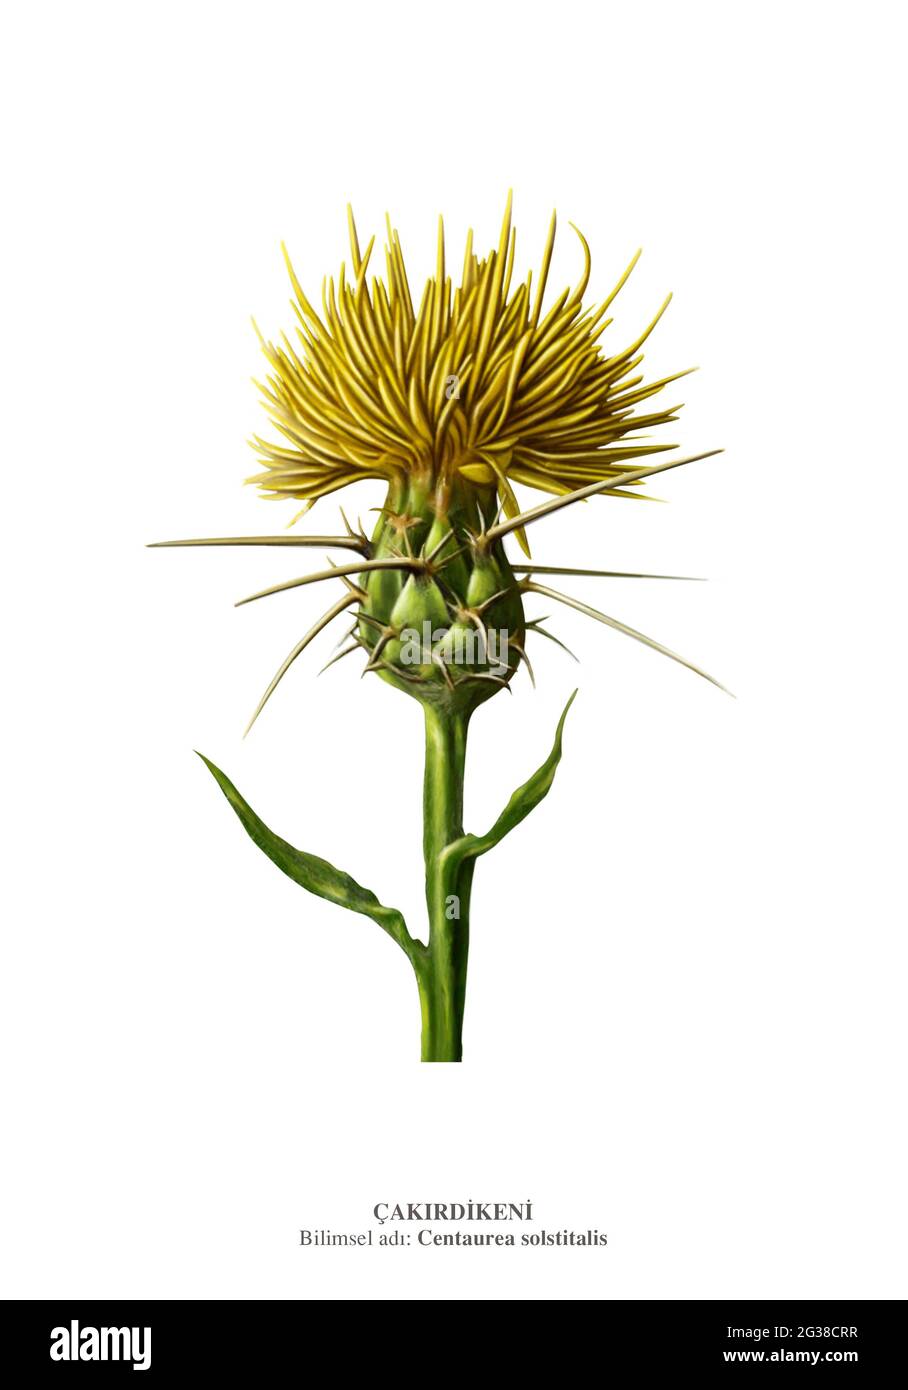 Centaurea solstitialis, le chardon étoile jaune, est un membre de la famille des Asteraceae, originaire de la région du bassin méditerranéen. Banque D'Images